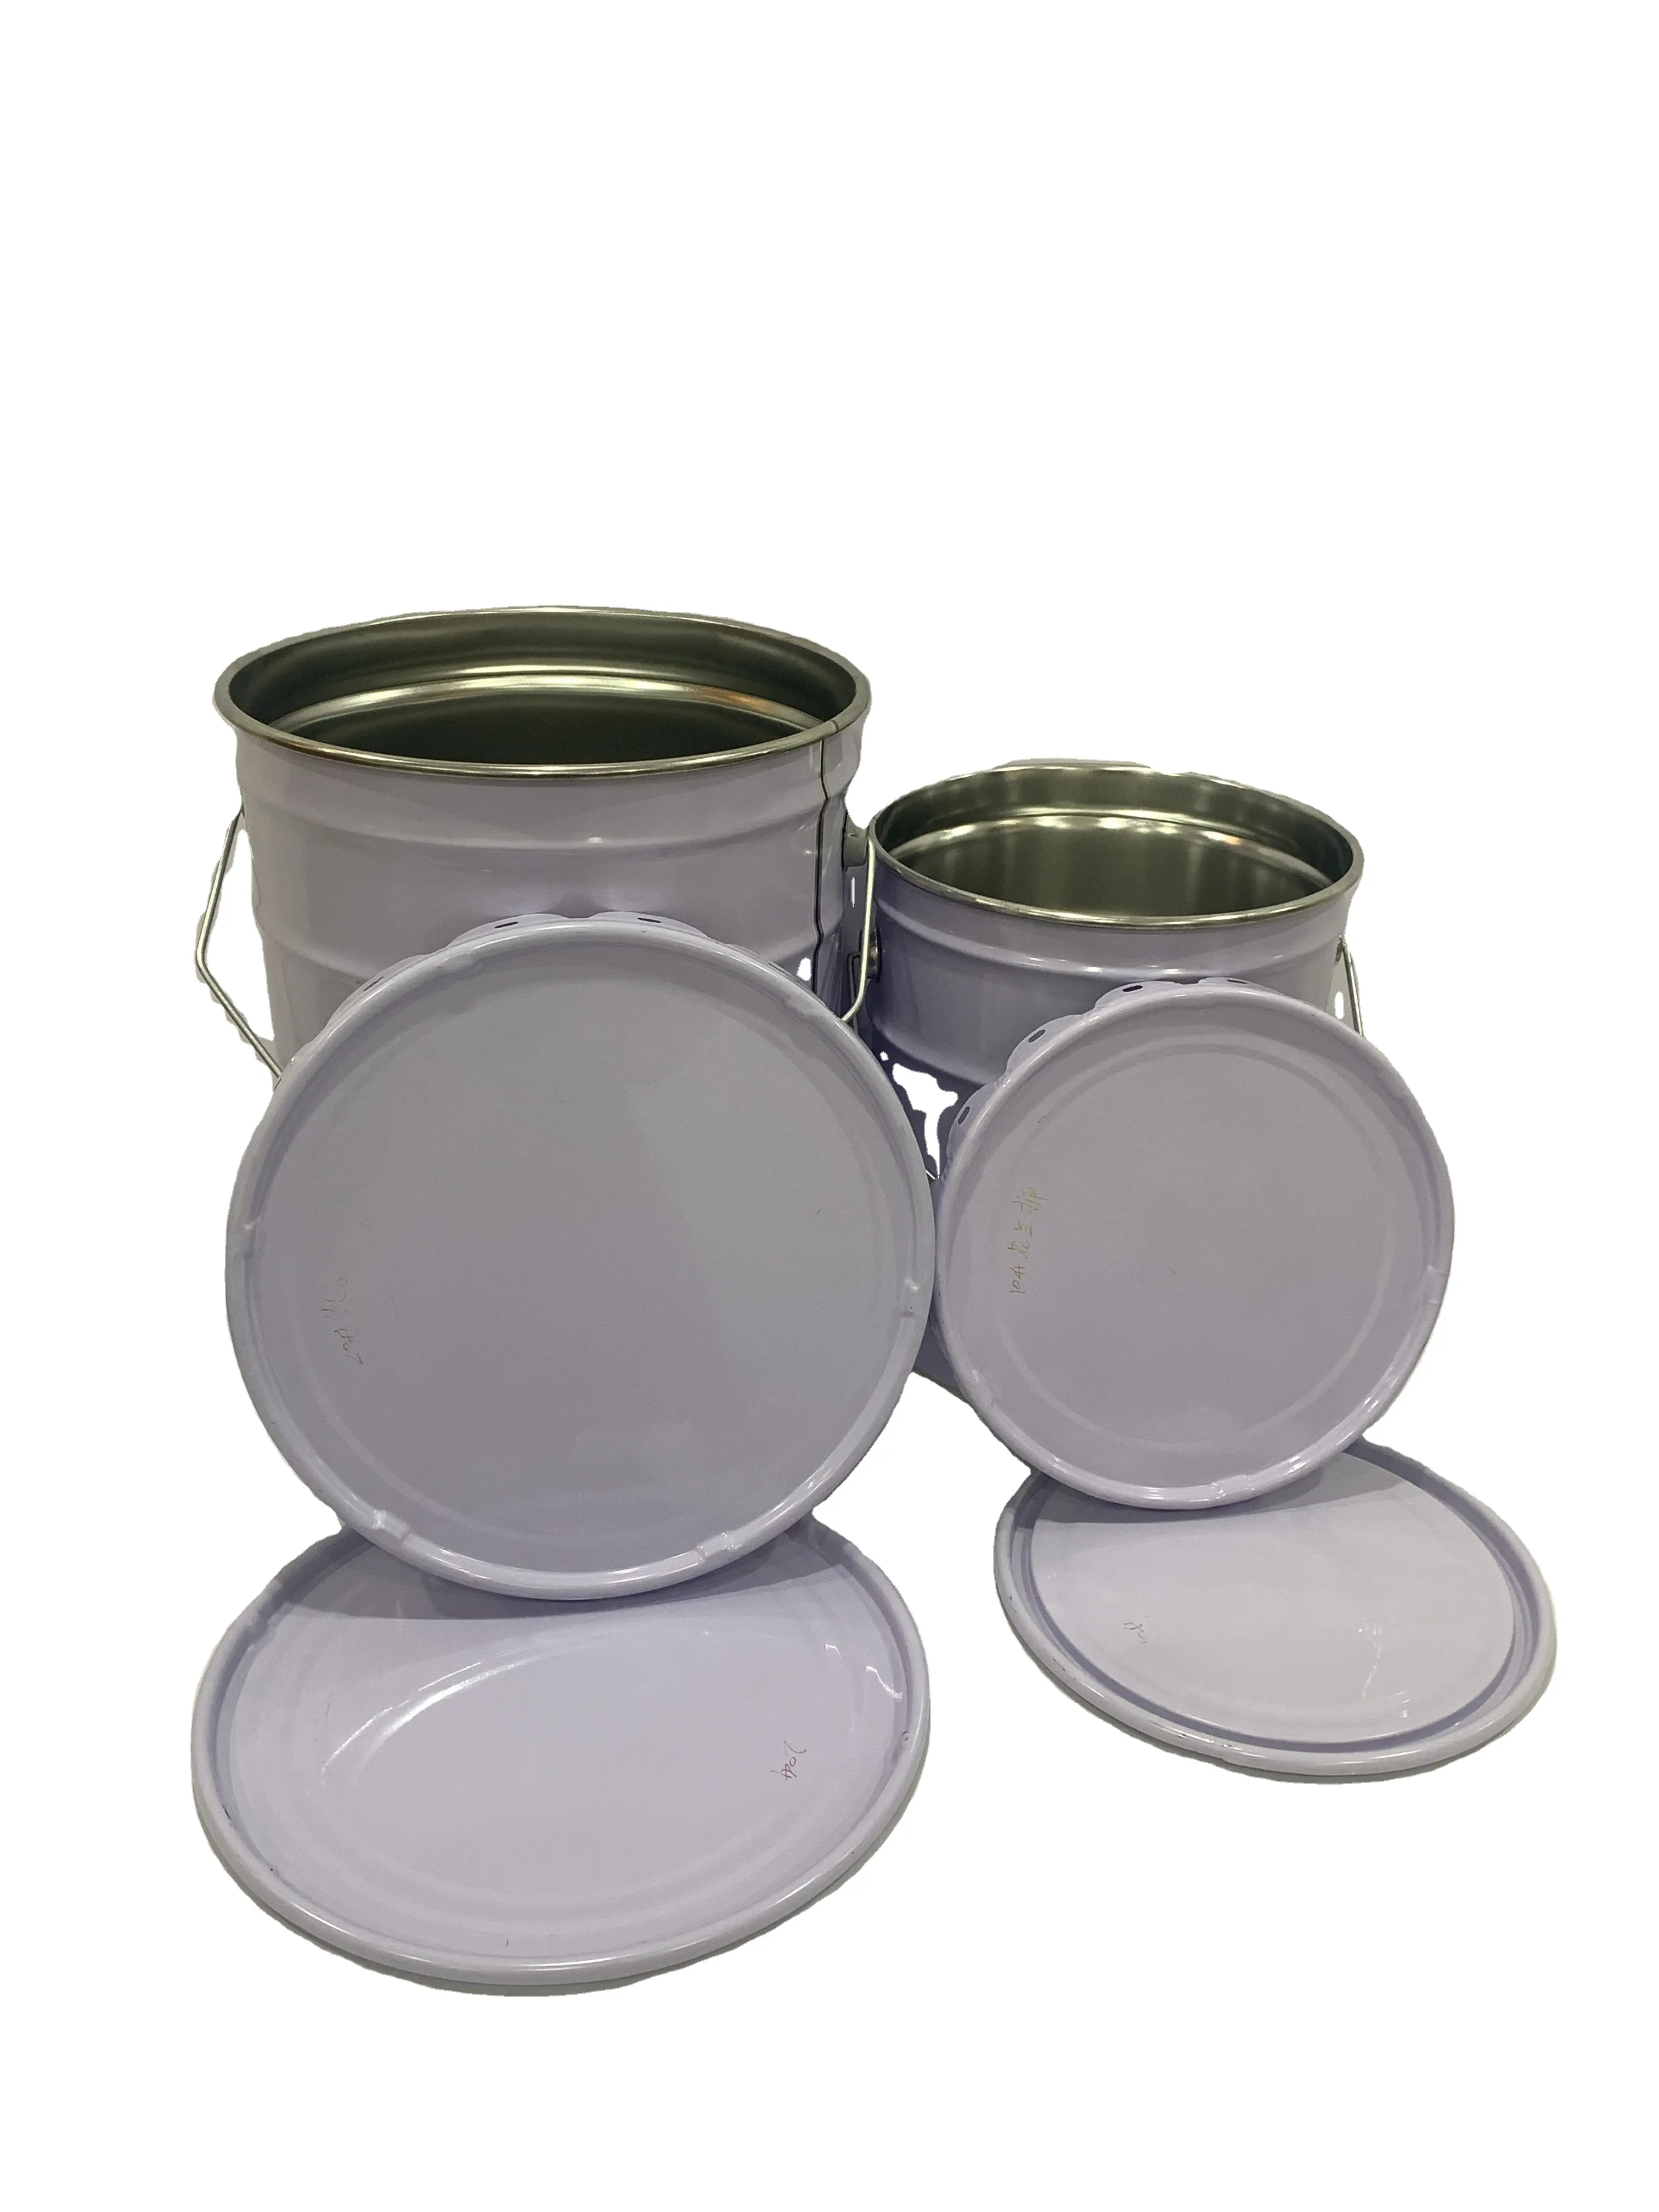 Индивидуальная печать на 10 и 18 л металлических банок, жестяные барабаны для упаковки красок и химикатов